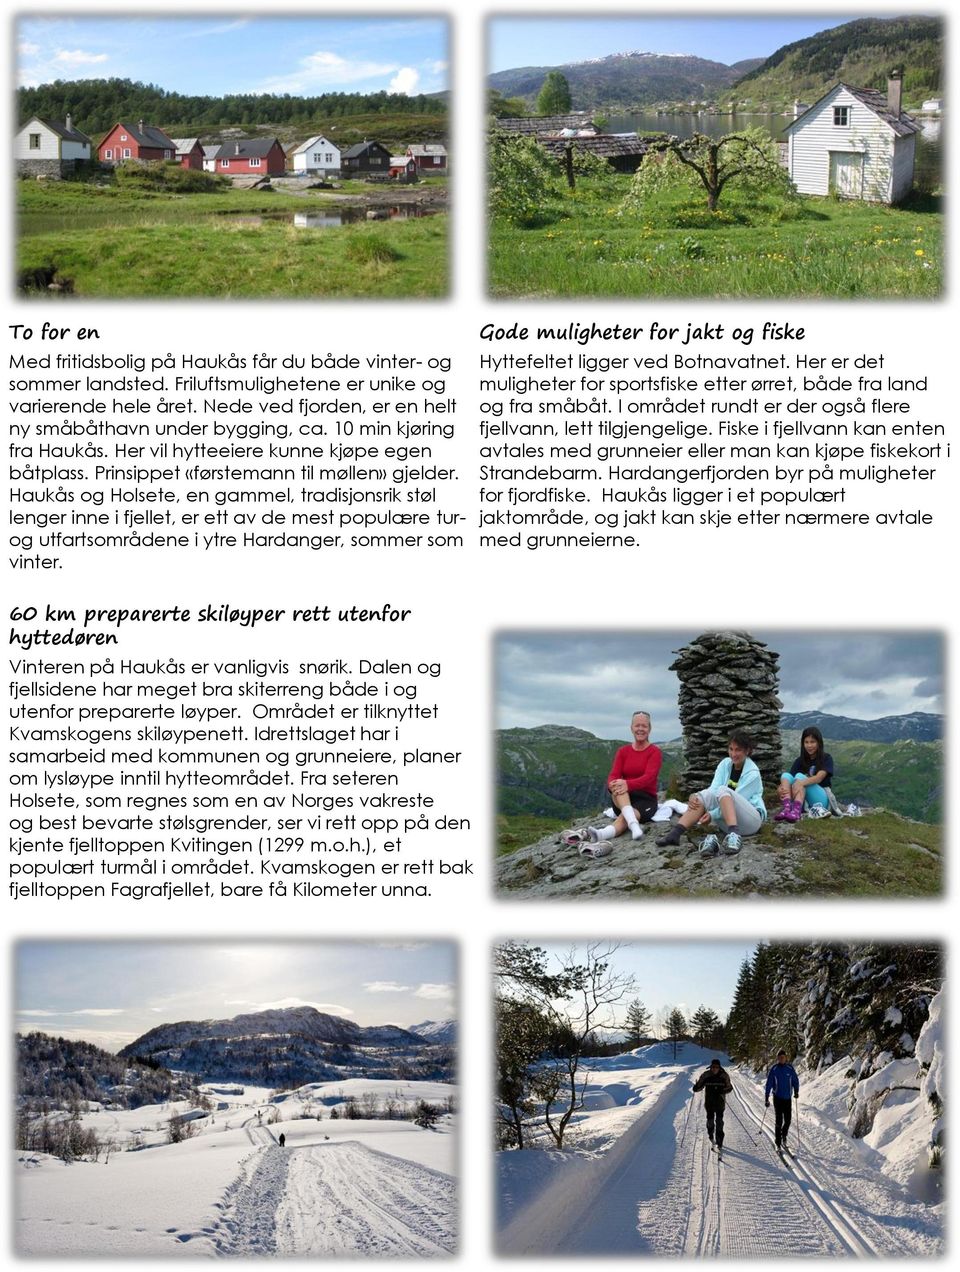 Haukås og Holsete, en gammel, tradisjonsrik støl lenger inne i fjellet, er ett av de mest populære turog utfartsområdene i ytre Hardanger, sommer som vinter.